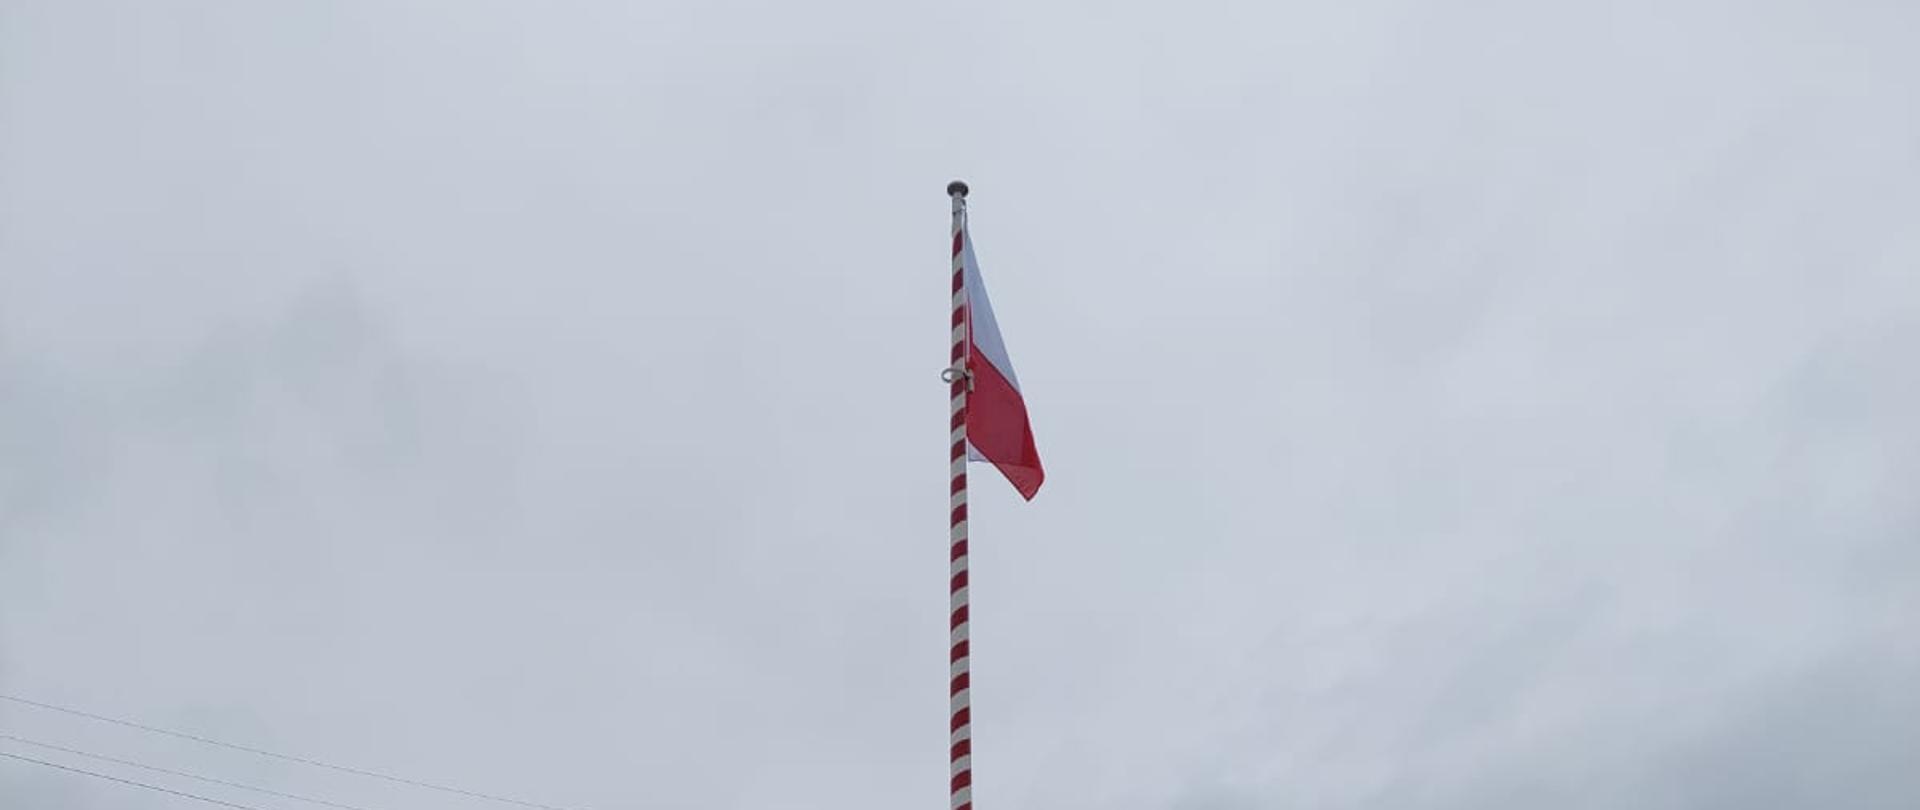 Strażacy JRG 6 podczas uroczystej zbiórki podnoszą flagę Polski na maszt.